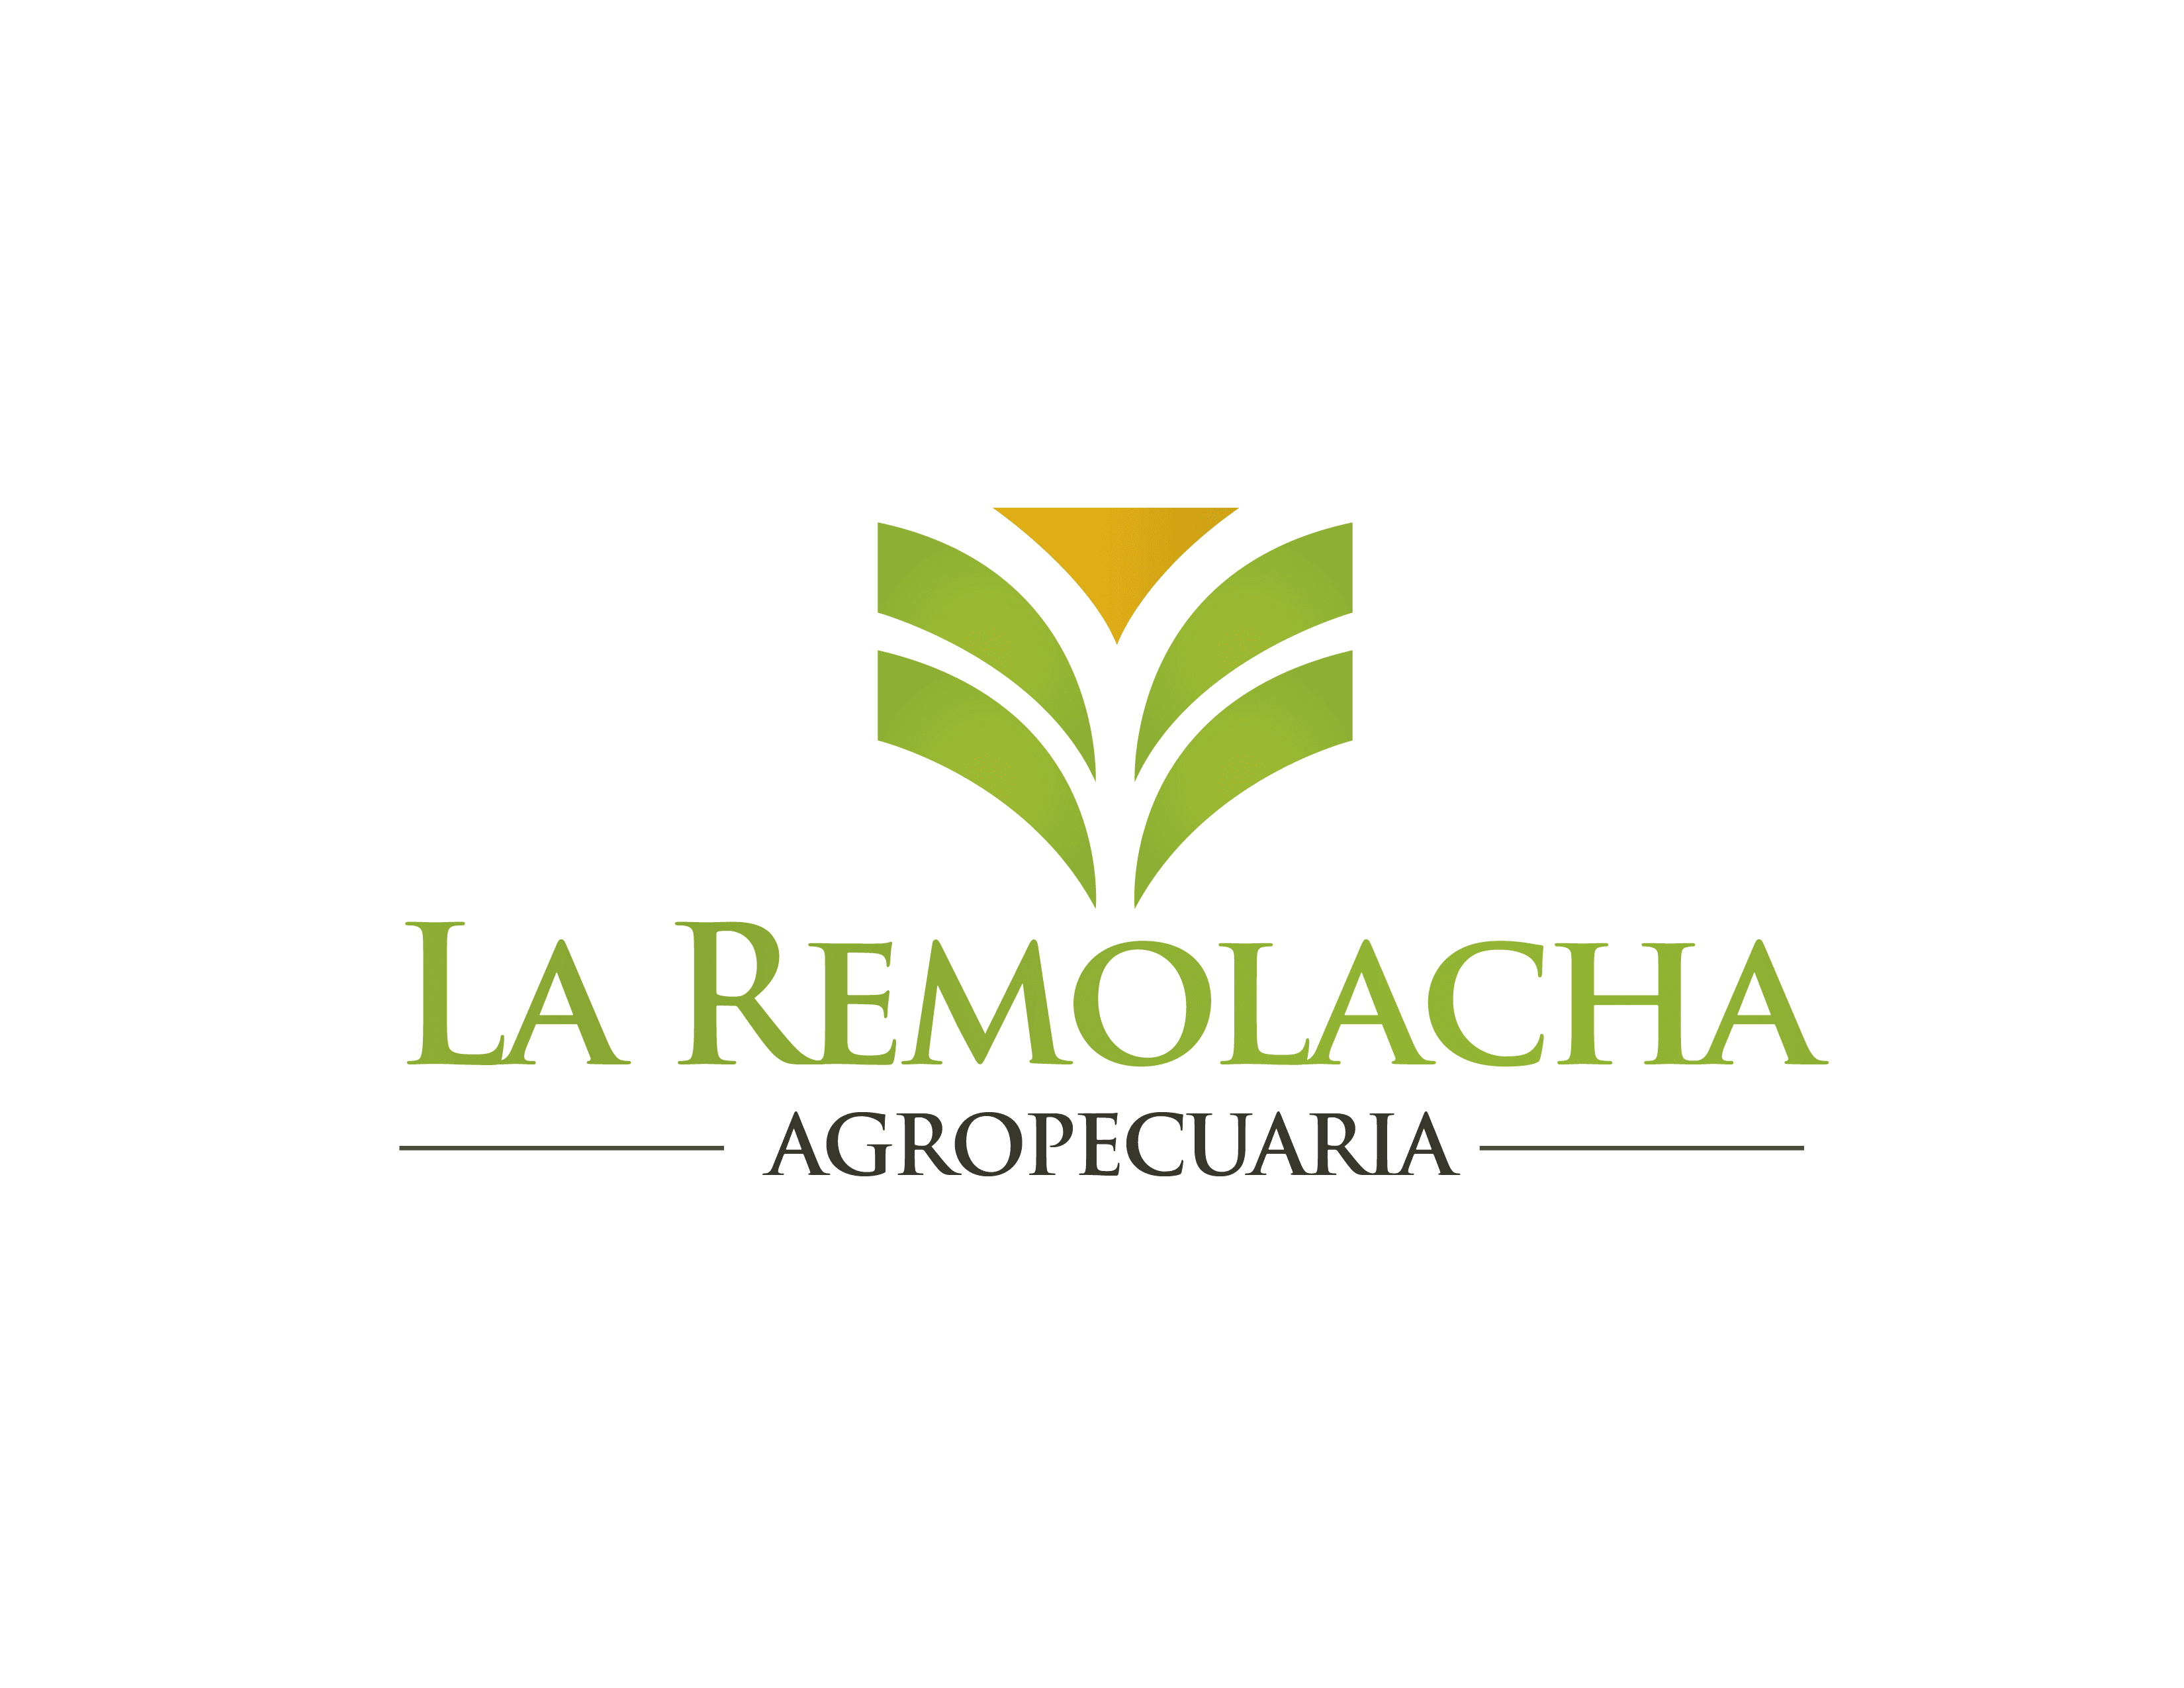 Agropecuaria La Remolacha